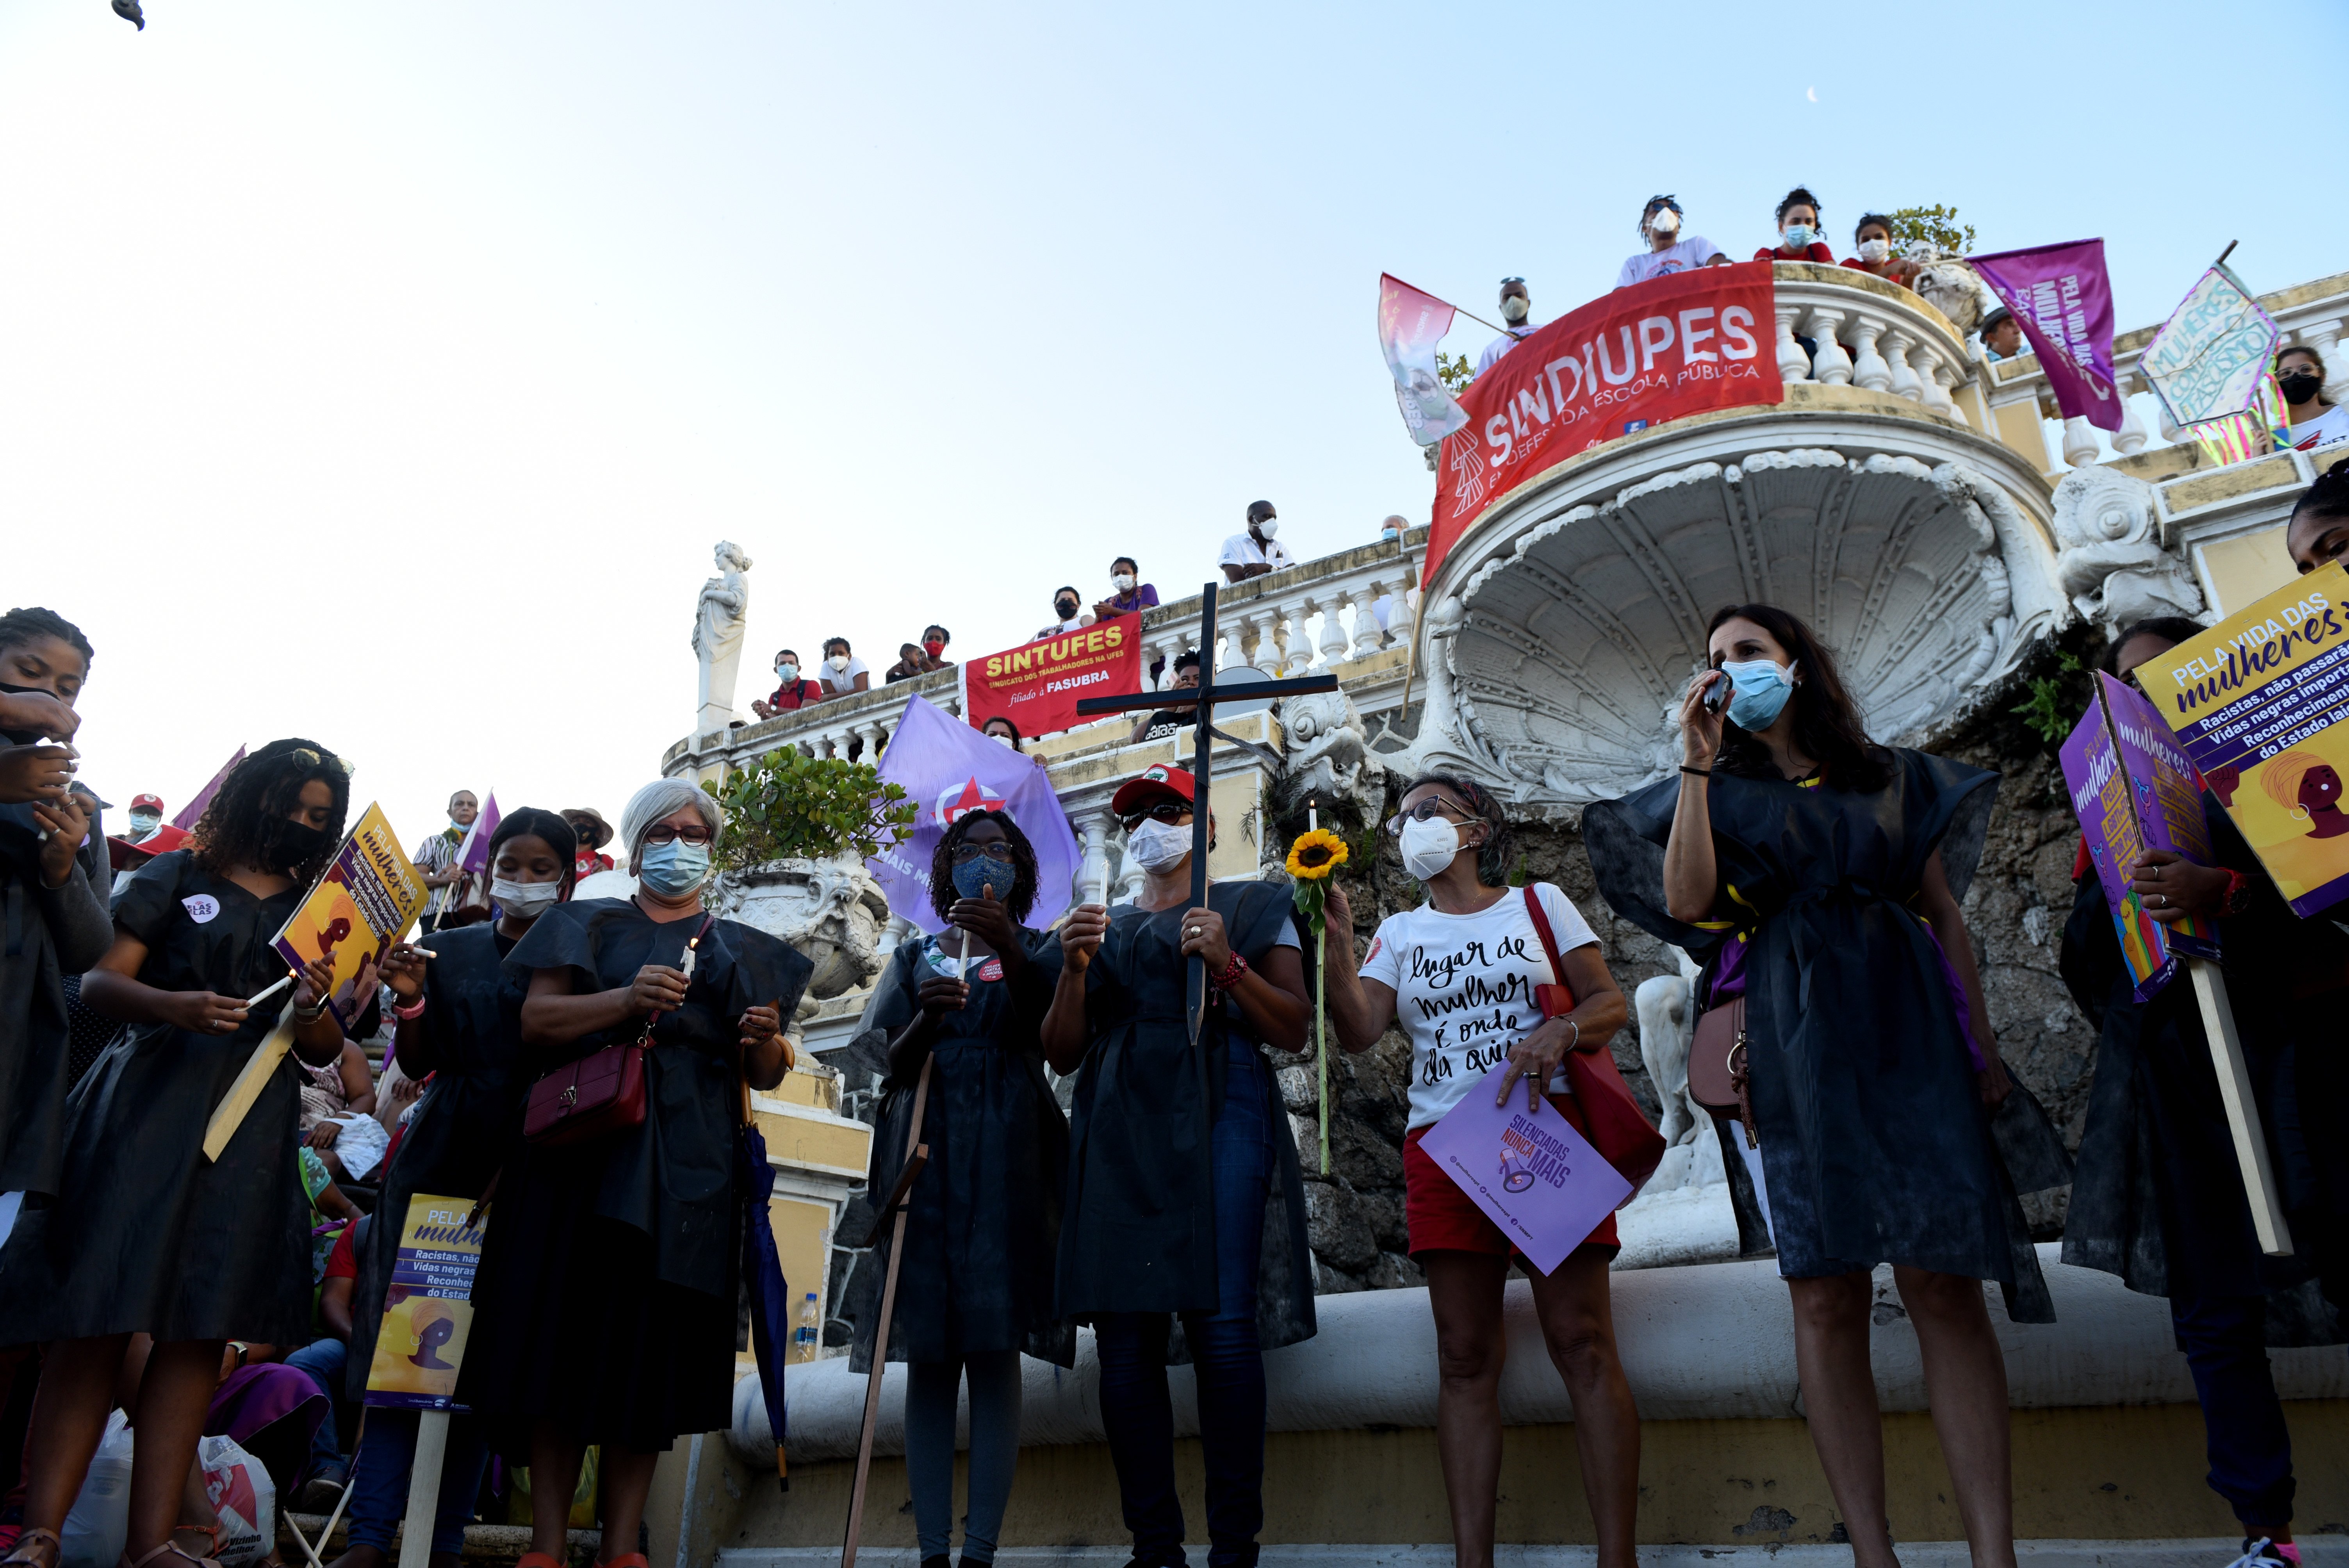 O Dia Internacional da Mulher foi marcado por ato no Centro de Vitória